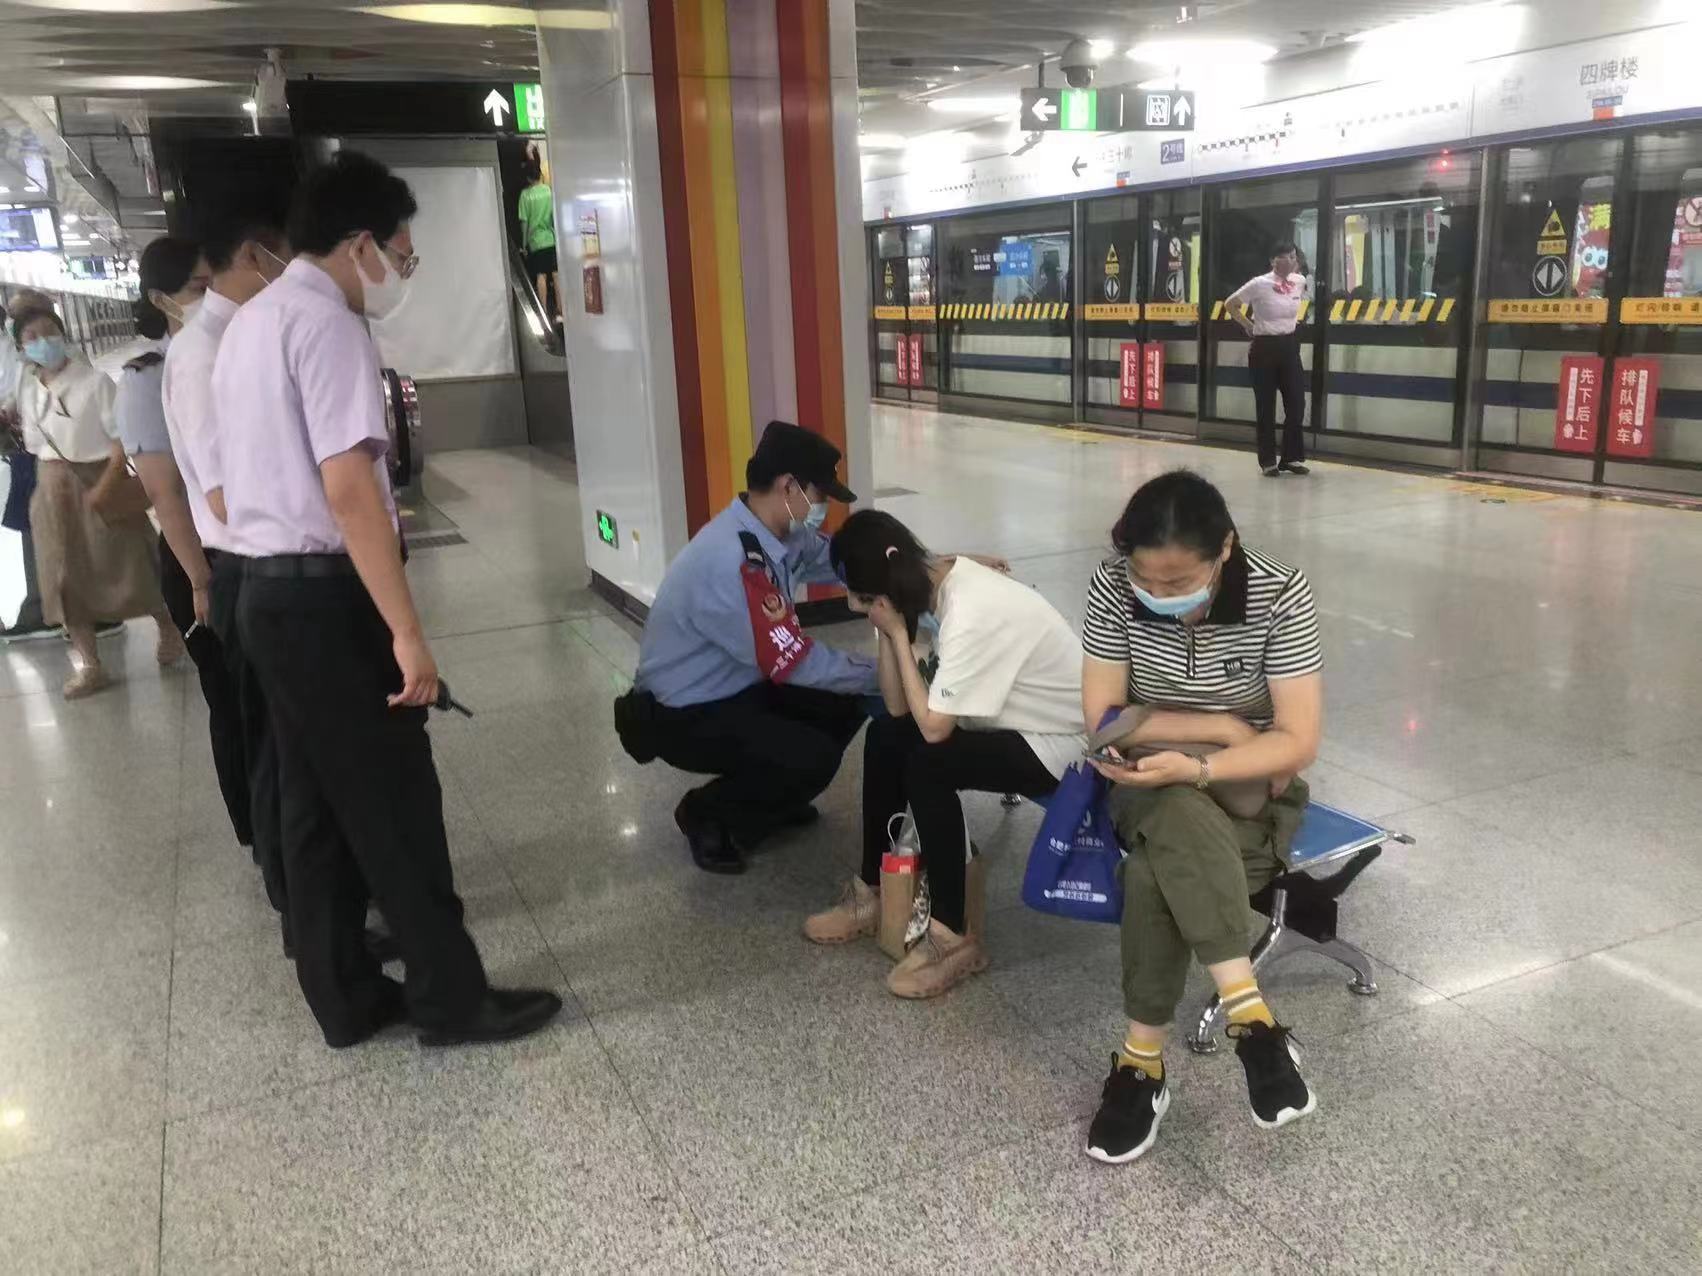 乘客晕倒 幸有同车医护及时相助 武汉地铁上演两个温情故事-荆楚网-湖北日报网